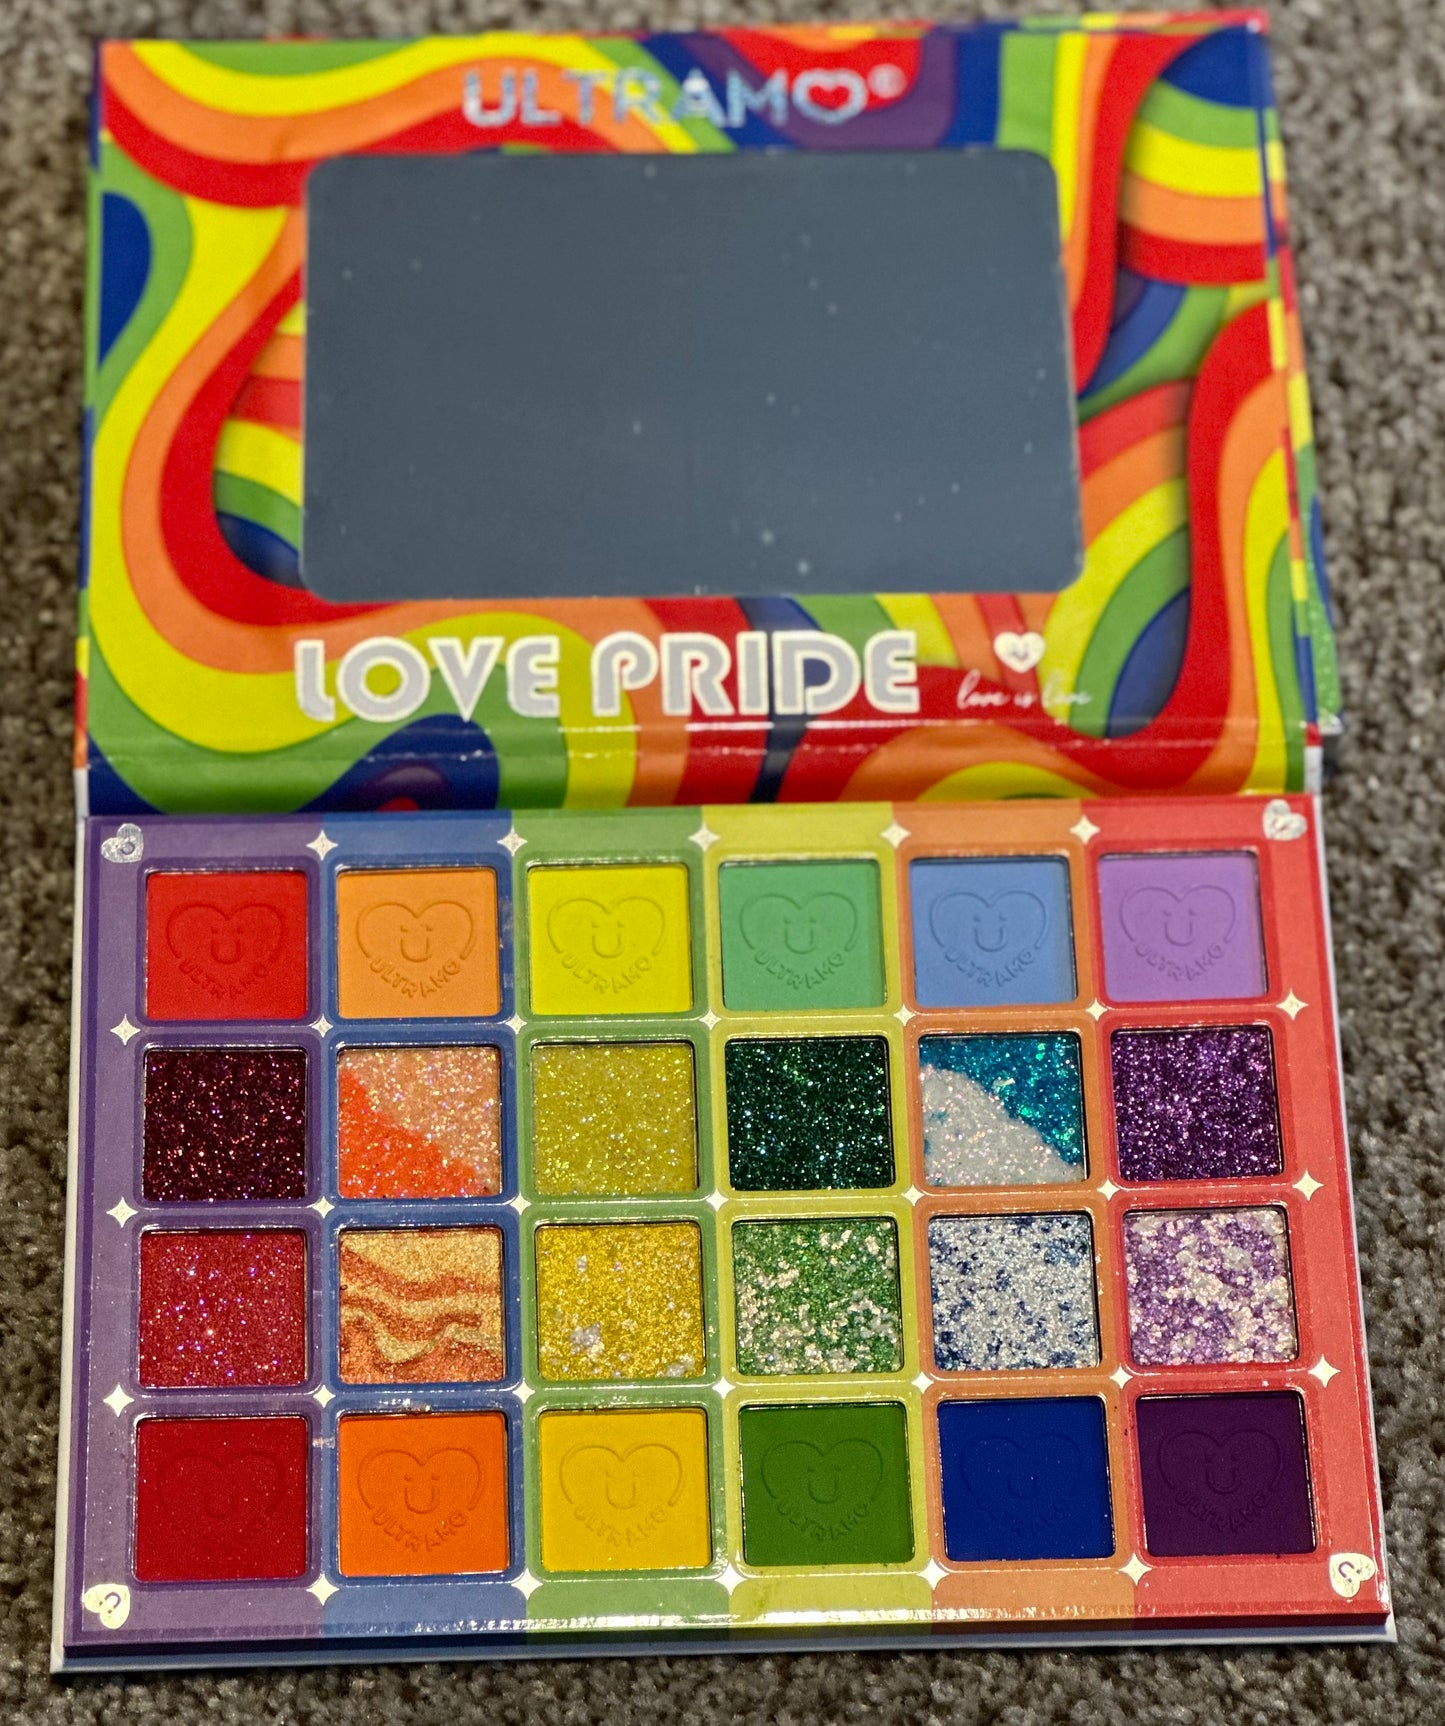 Ultramo Love Pride(Multi Purpose Palette)